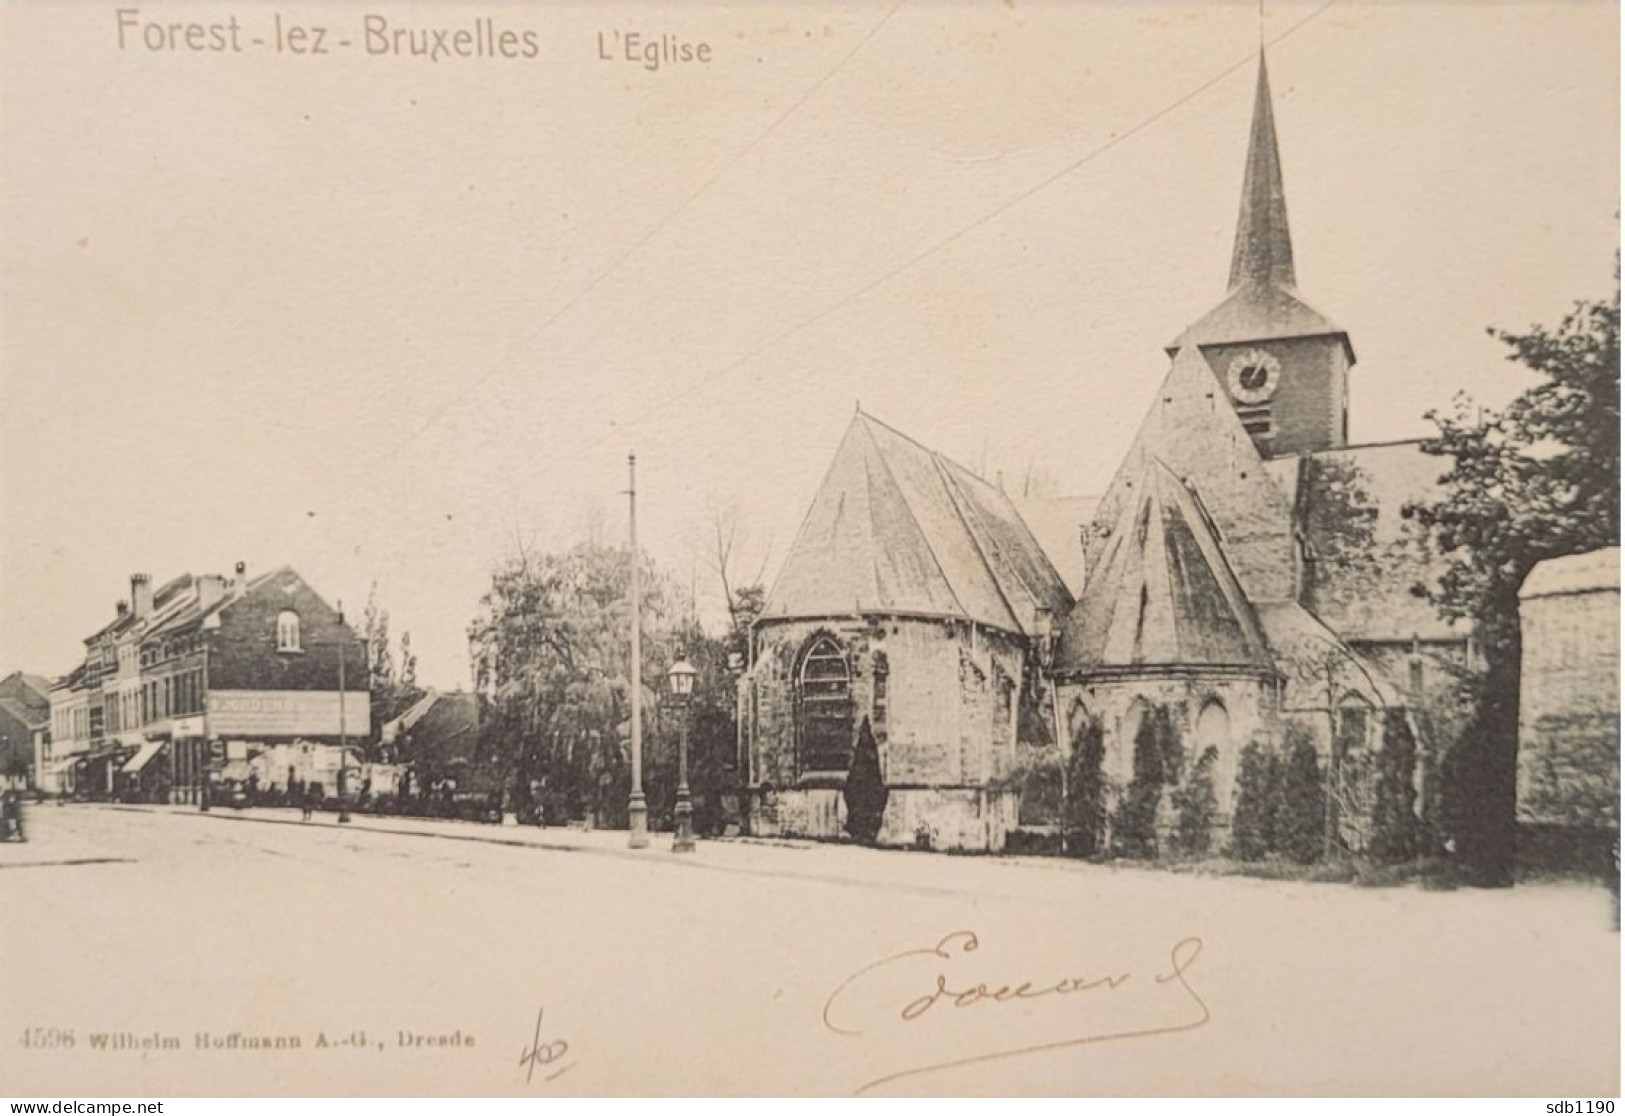 Forest-lez-Bruxelles - L'Eglise (4596 Wilhelm Hoffmann A.-G., Dresde), Circulée 190? - Forest - Vorst